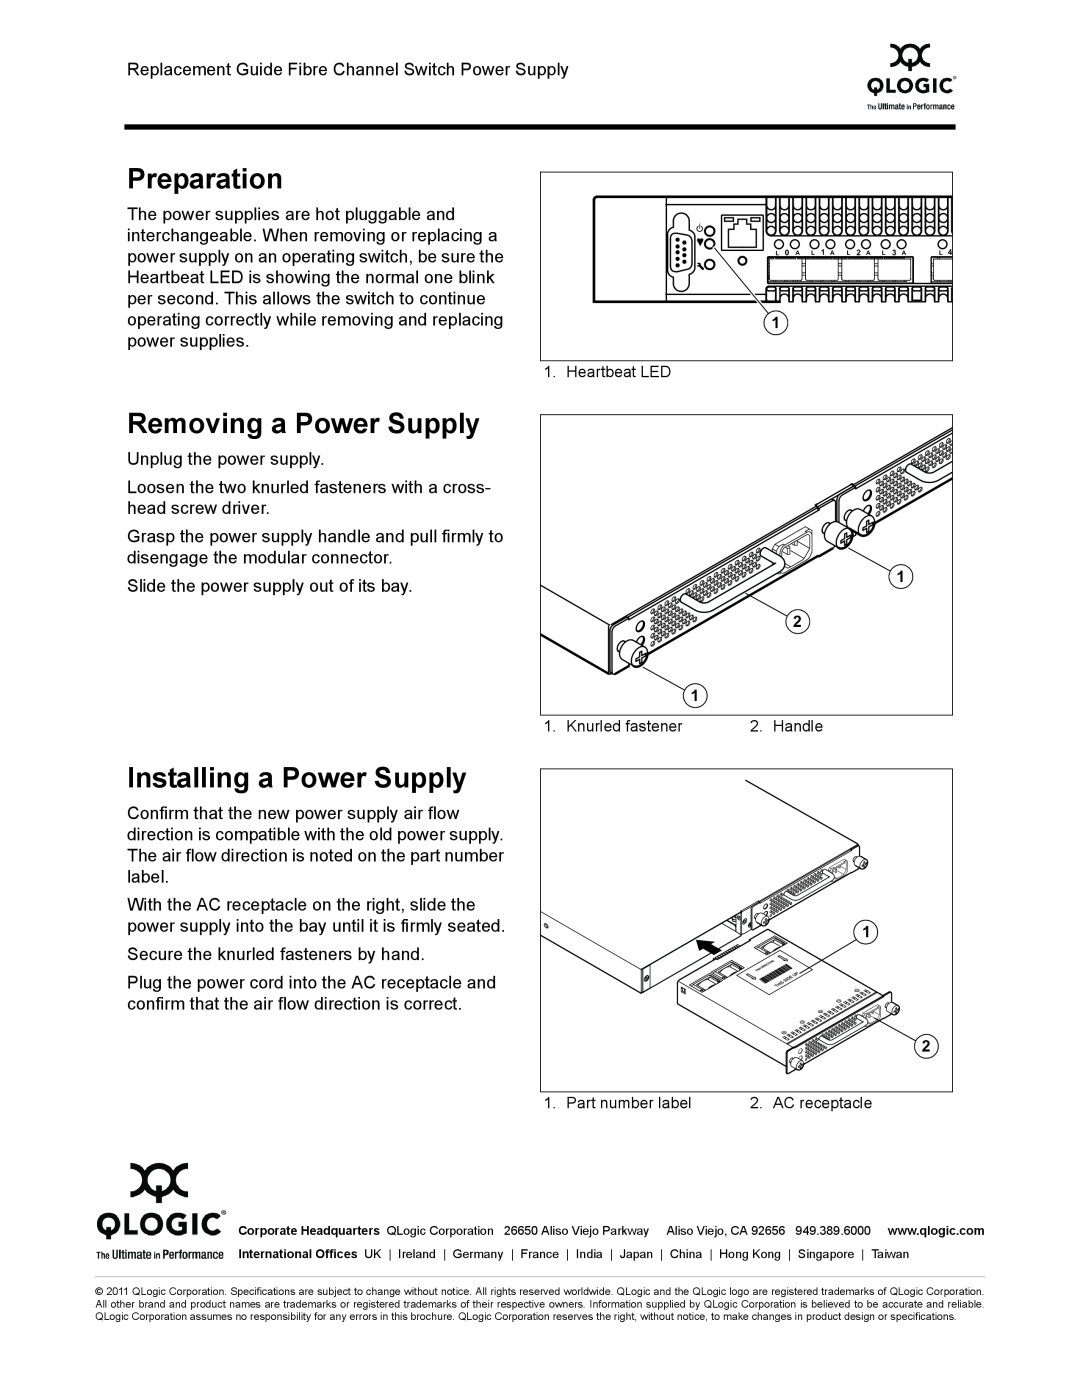 Q-Logic SBPSFAN2BF, SBPSFANFB, SBPSFAN2FB, 50372-03 A manual Preparation, Removing a Power Supply, Installing a Power Supply 